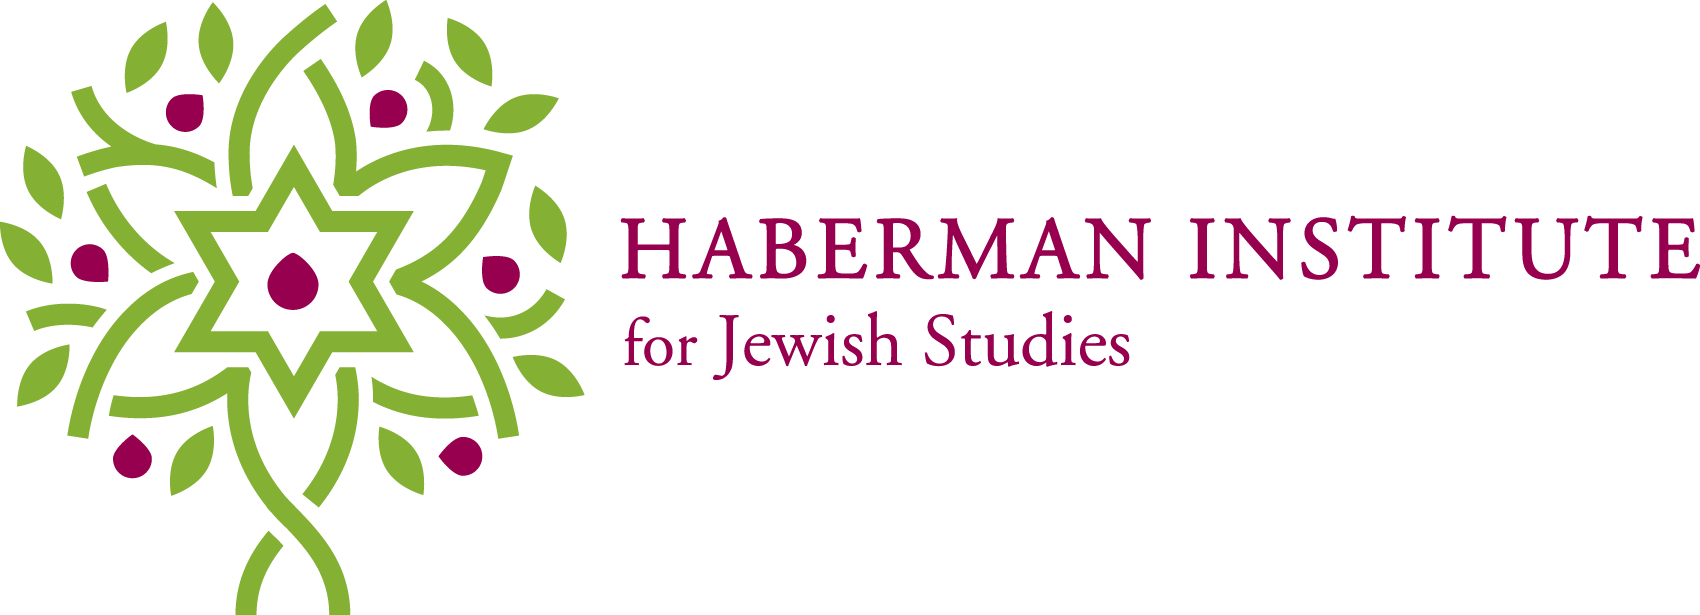 Haberman Institute for Jewish Studies - logo